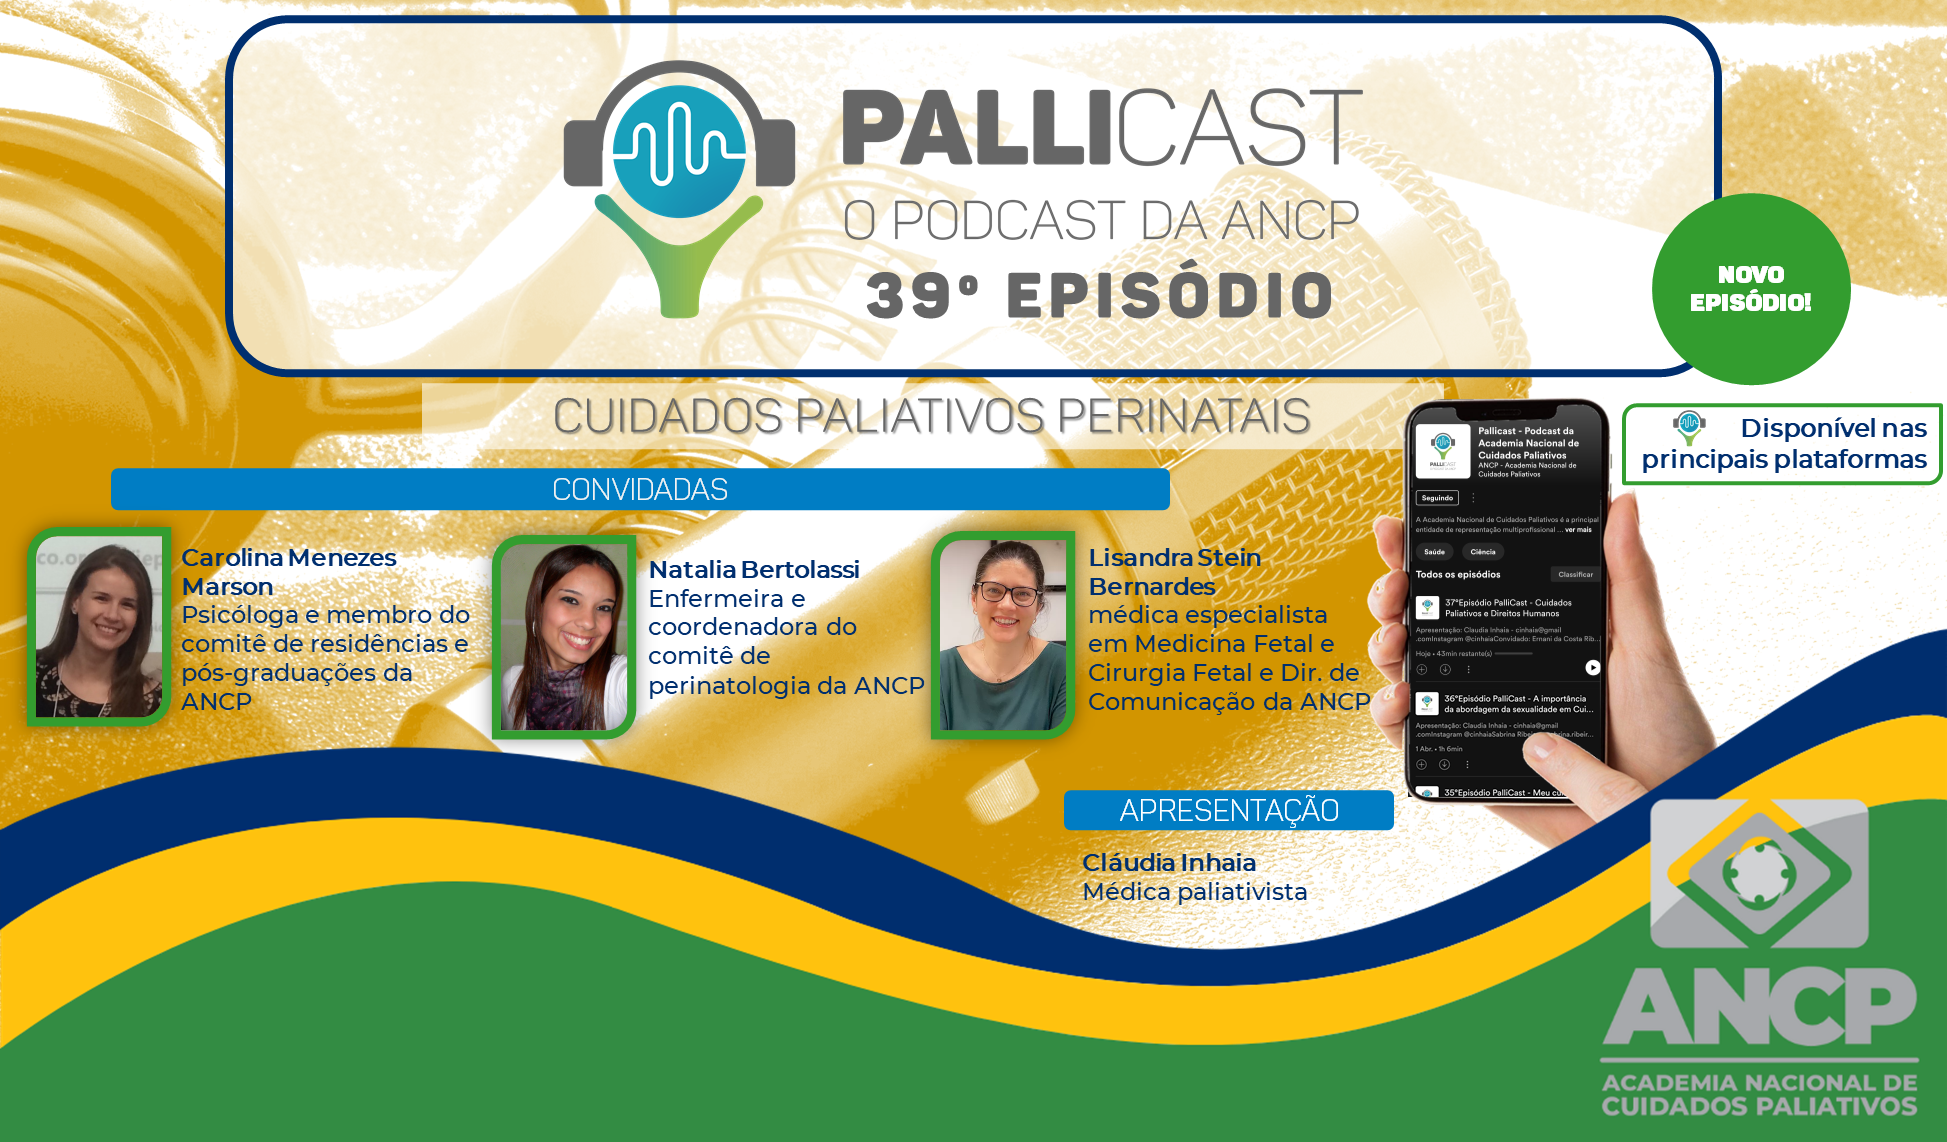 39ºEpisodio PalliCast – Cuidados Paliativos Perinatais: o trabalho em equipe no cuidado paliativo perinatal